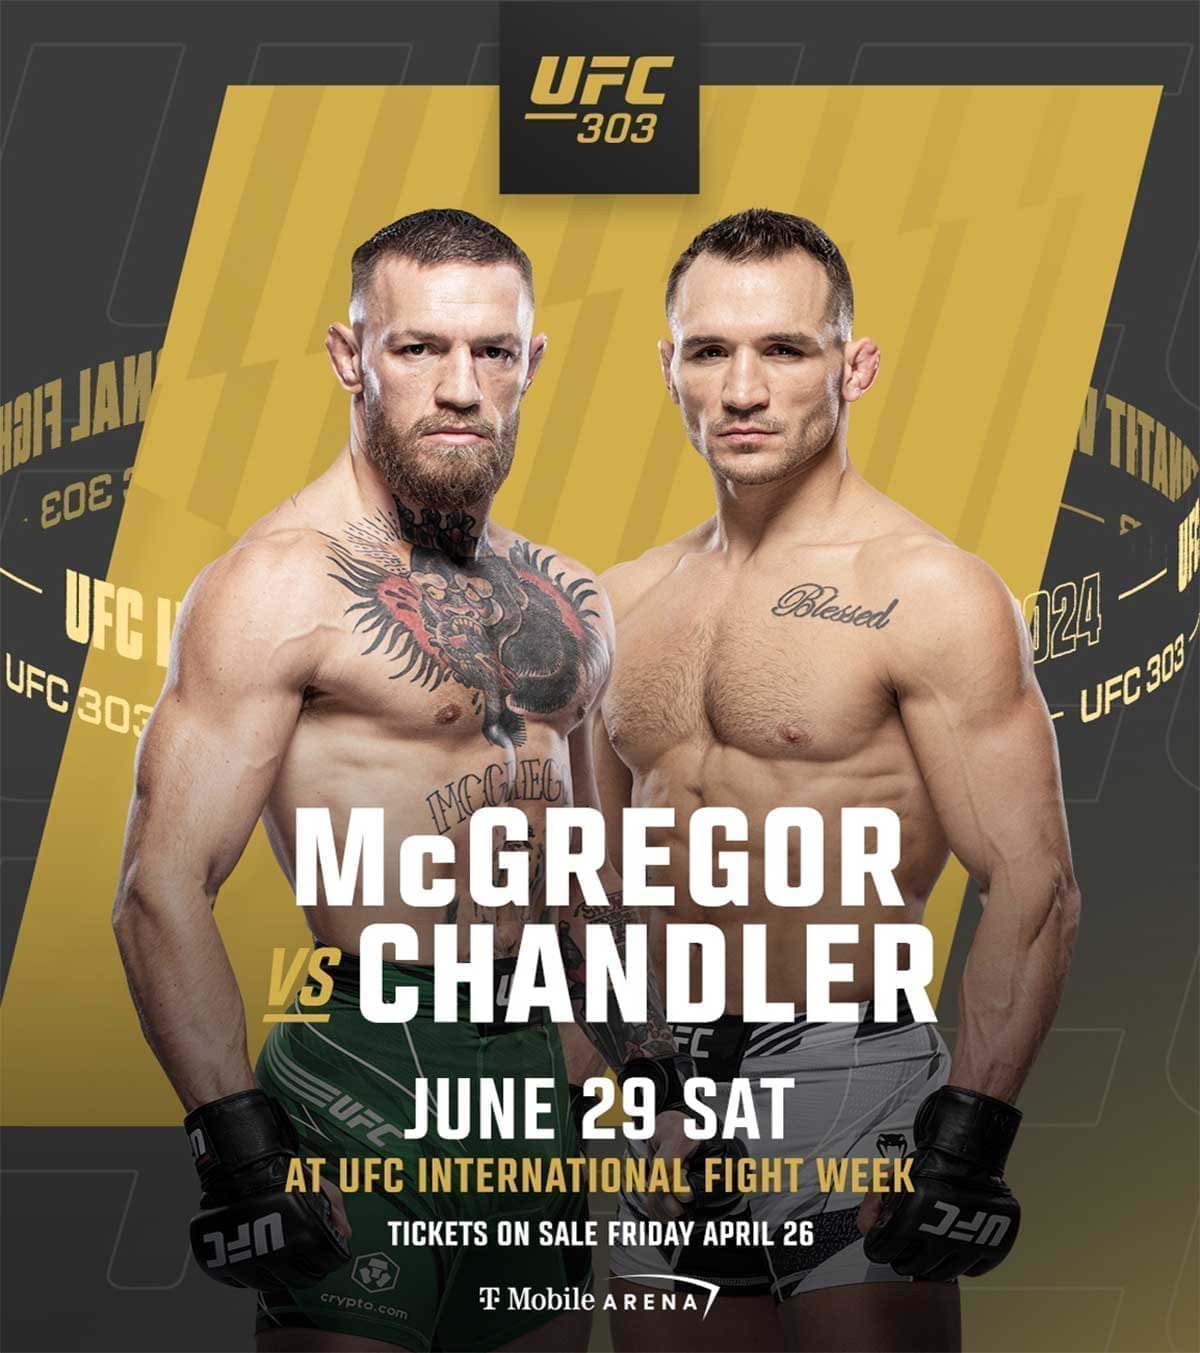 UFC 303: МакГрегор - Чендлер дата проведения, кард, участники и результаты